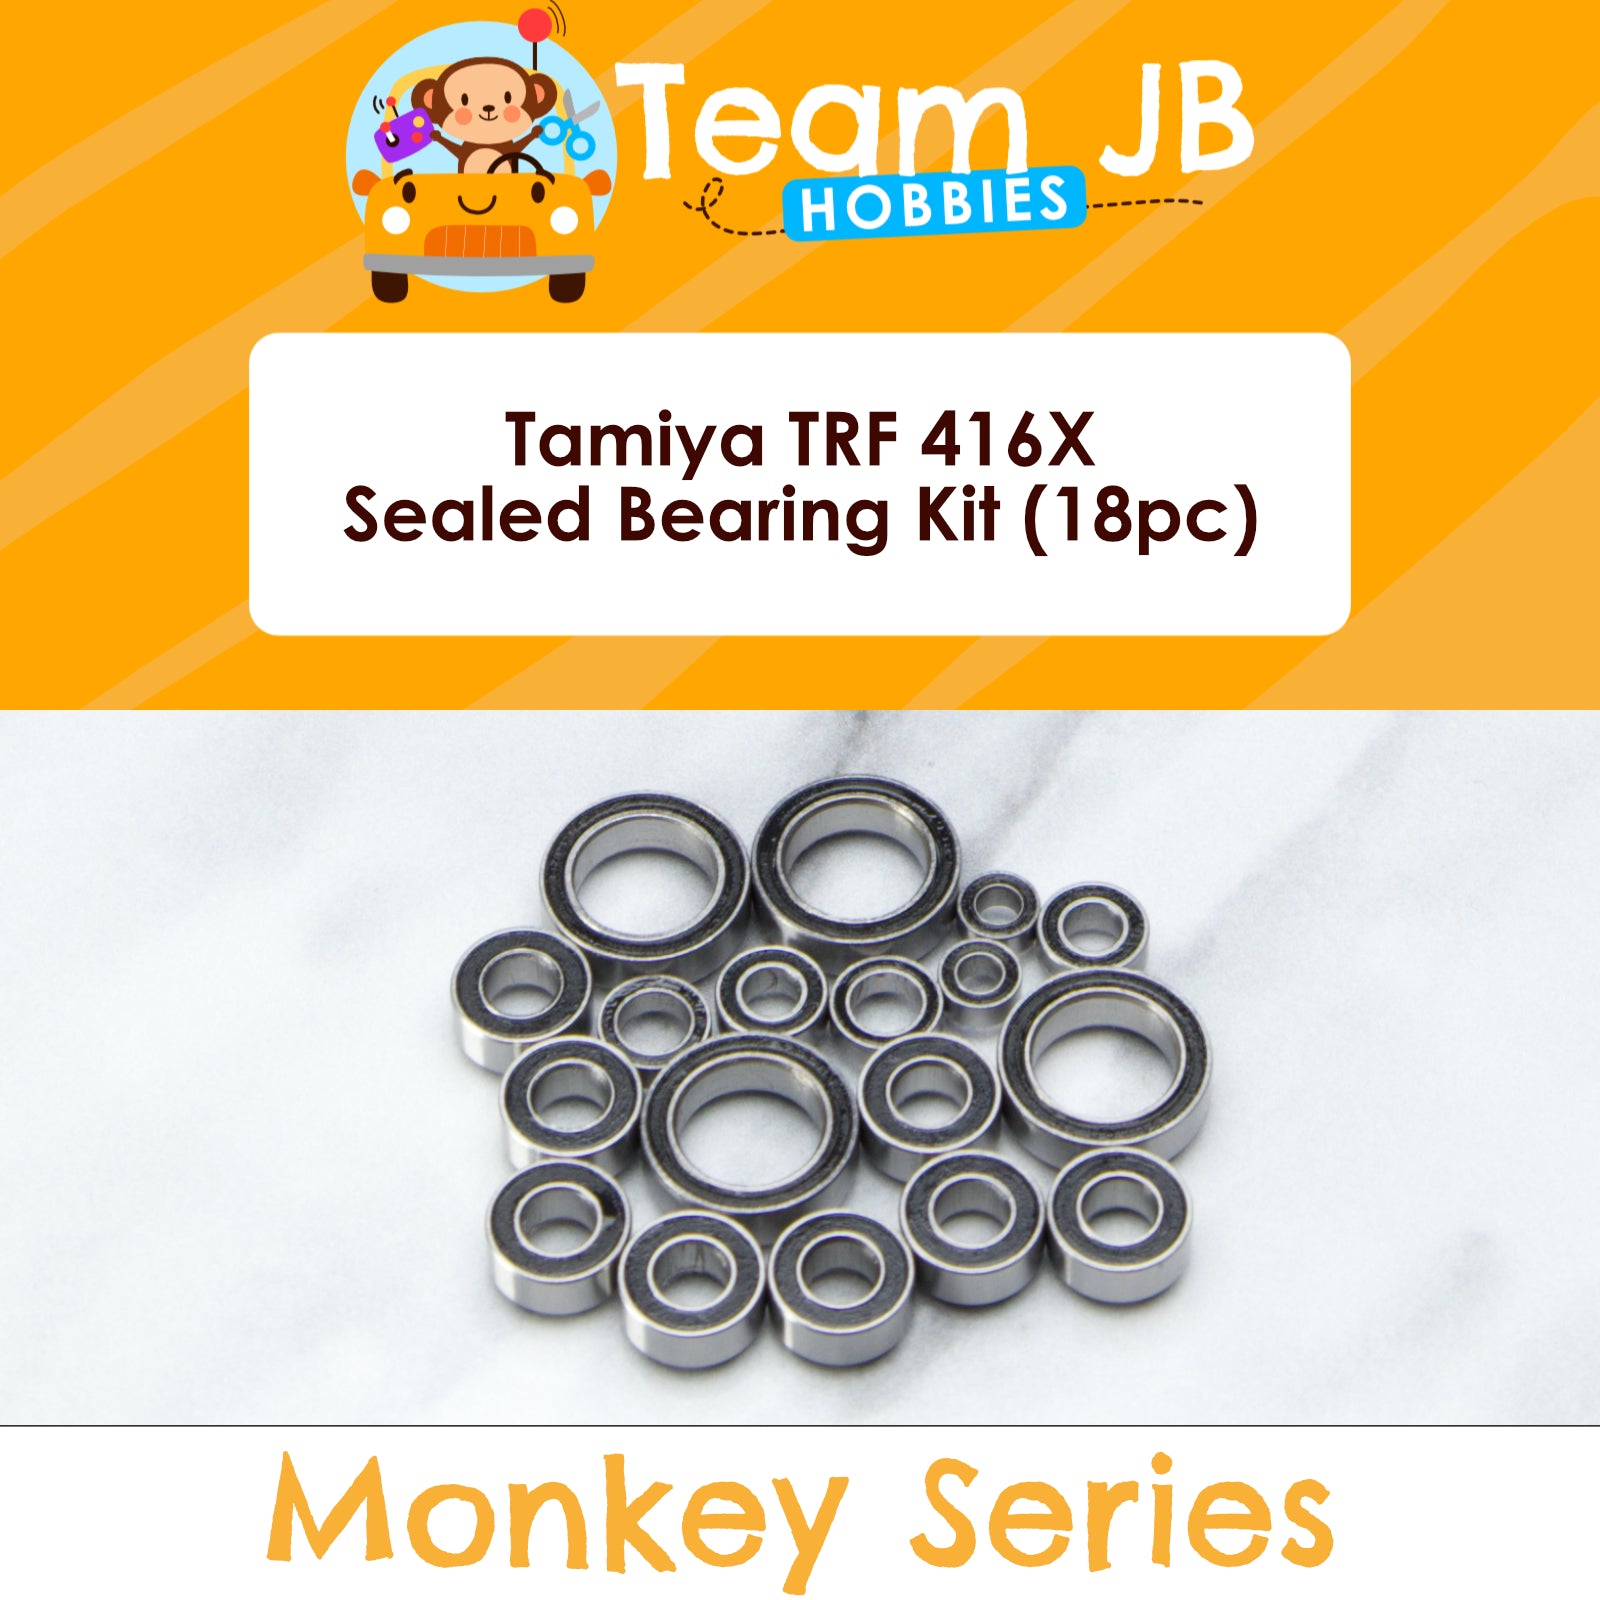 Tamiya TRF 416X - Sealed Bearing Kit